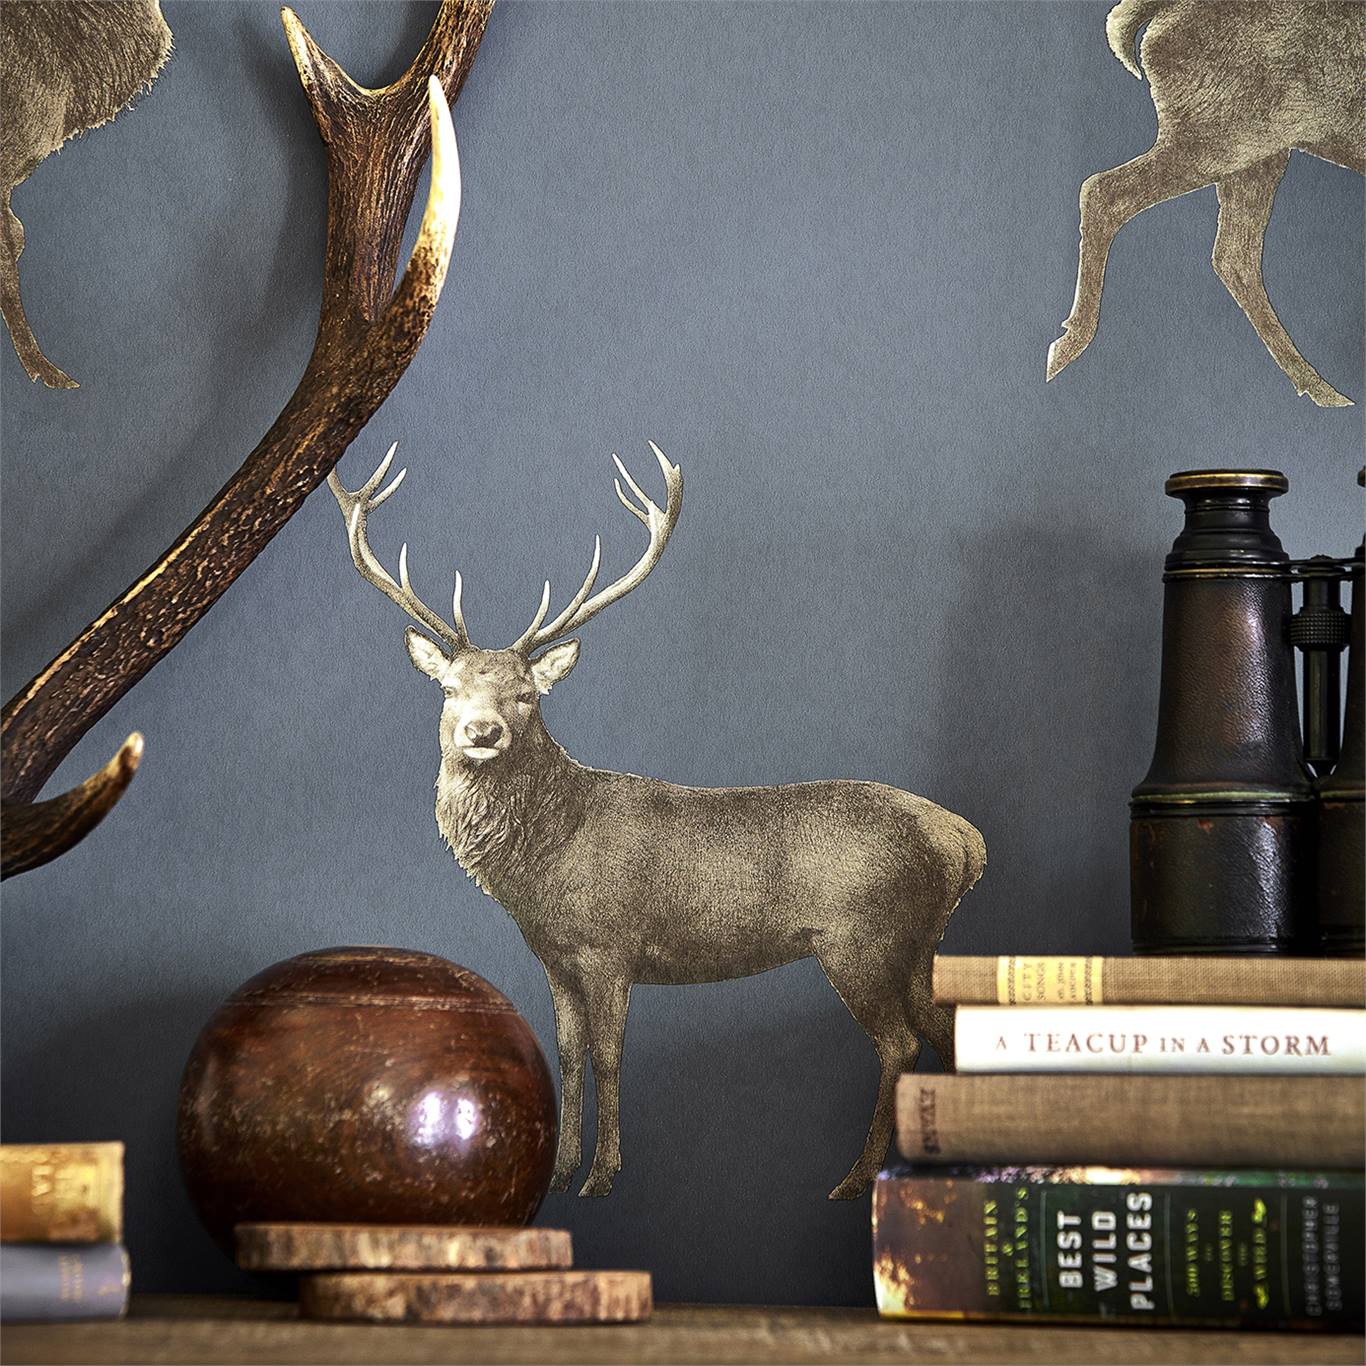 Evesham Deer Wallpaper From The Elysian Collection - Sanderson Evesham Deer , HD Wallpaper & Backgrounds